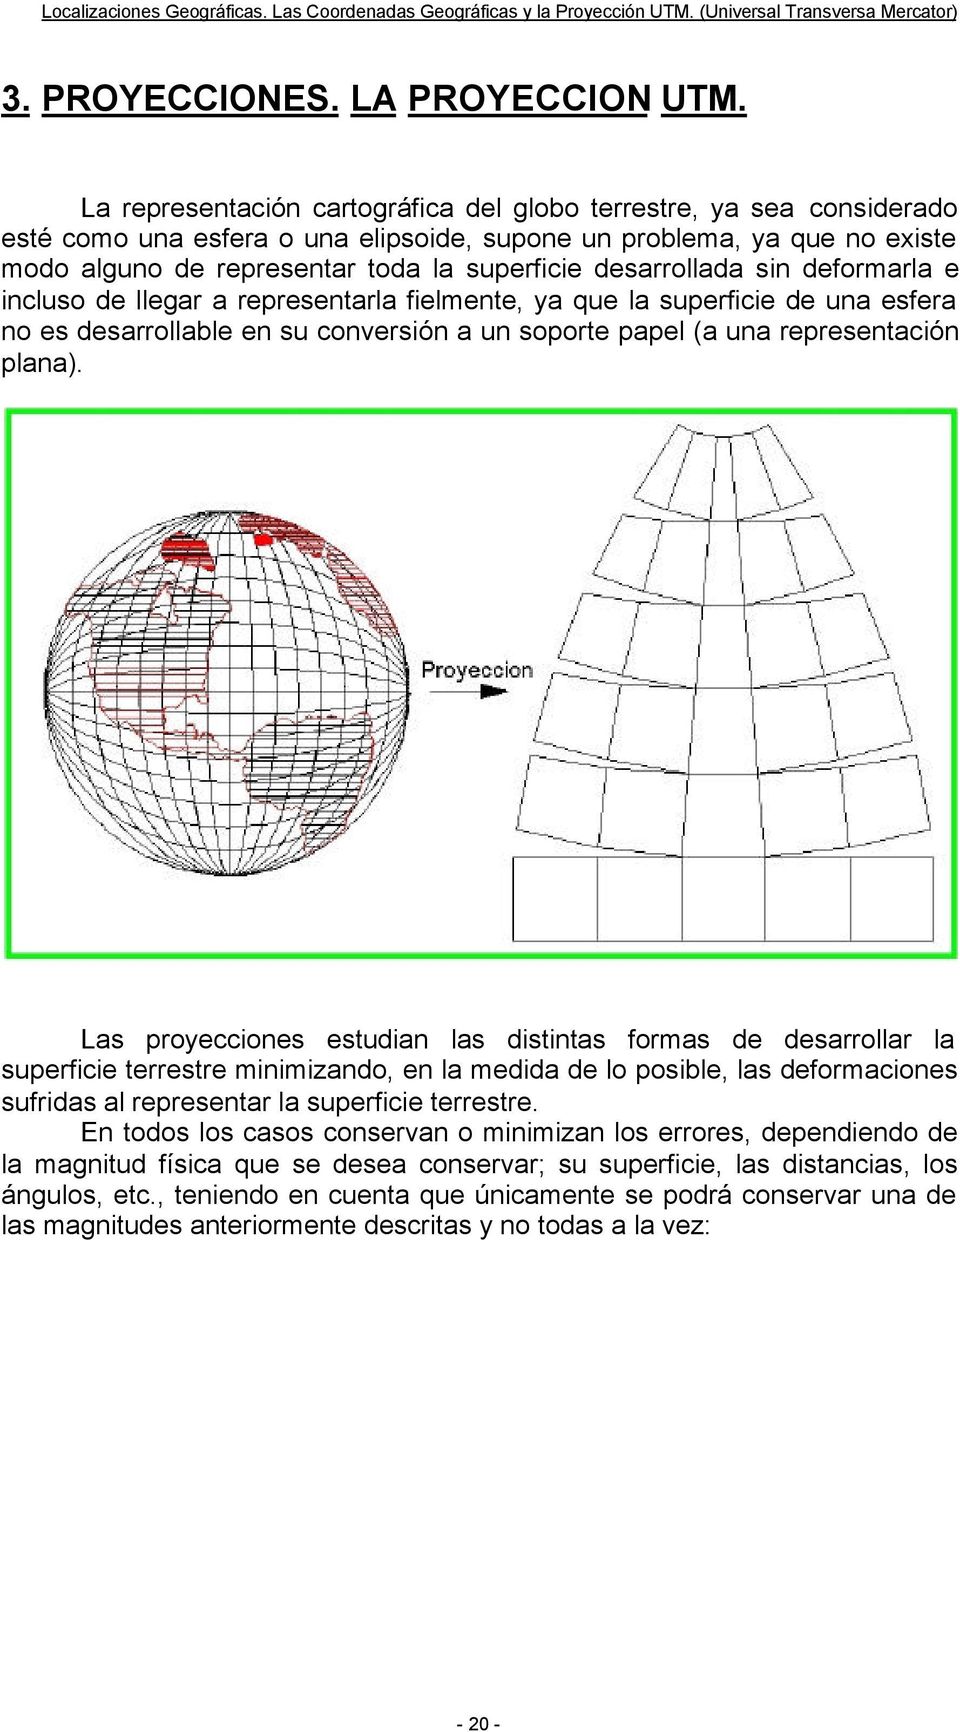 desarrollada sin deformarla e incluso de llegar a representarla fielmente, ya que la superficie de una esfera no es desarrollable en su conversión a un soporte papel (a una representación plana).